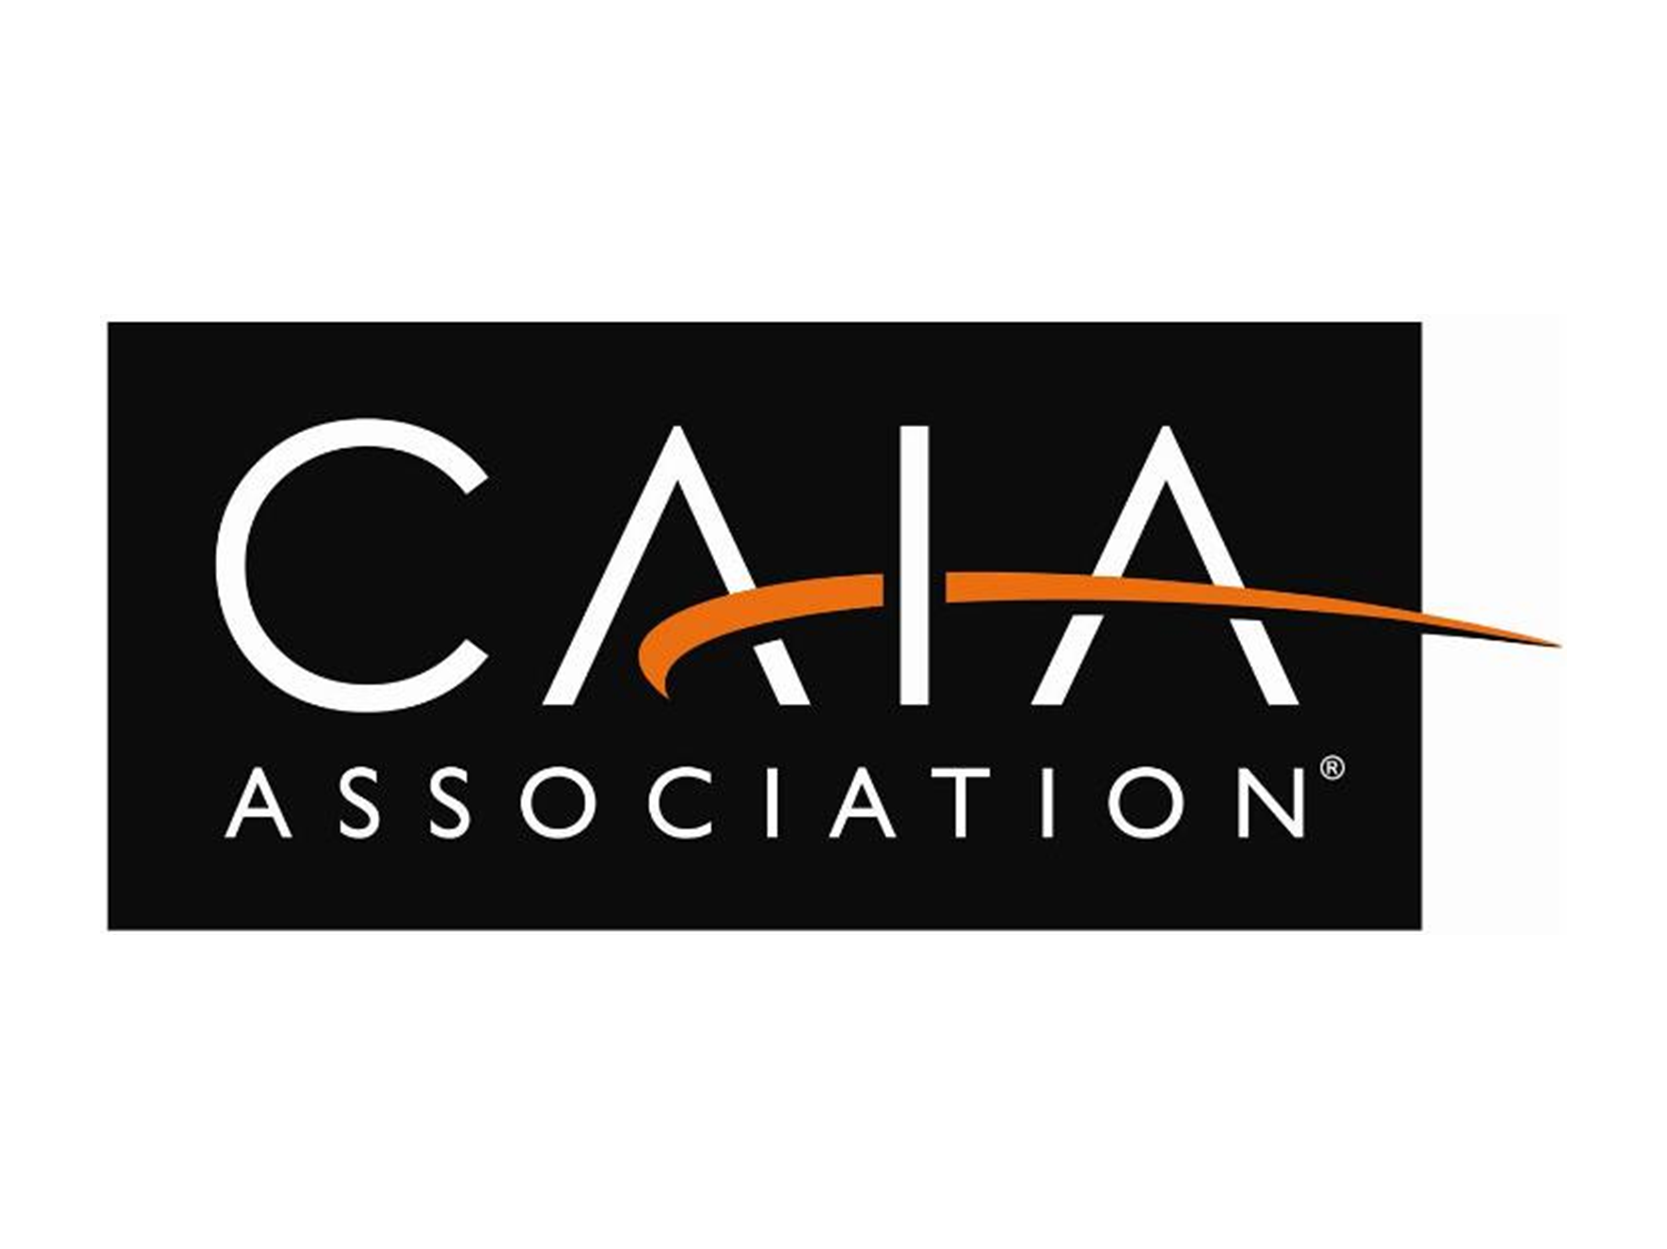 CAIA Association